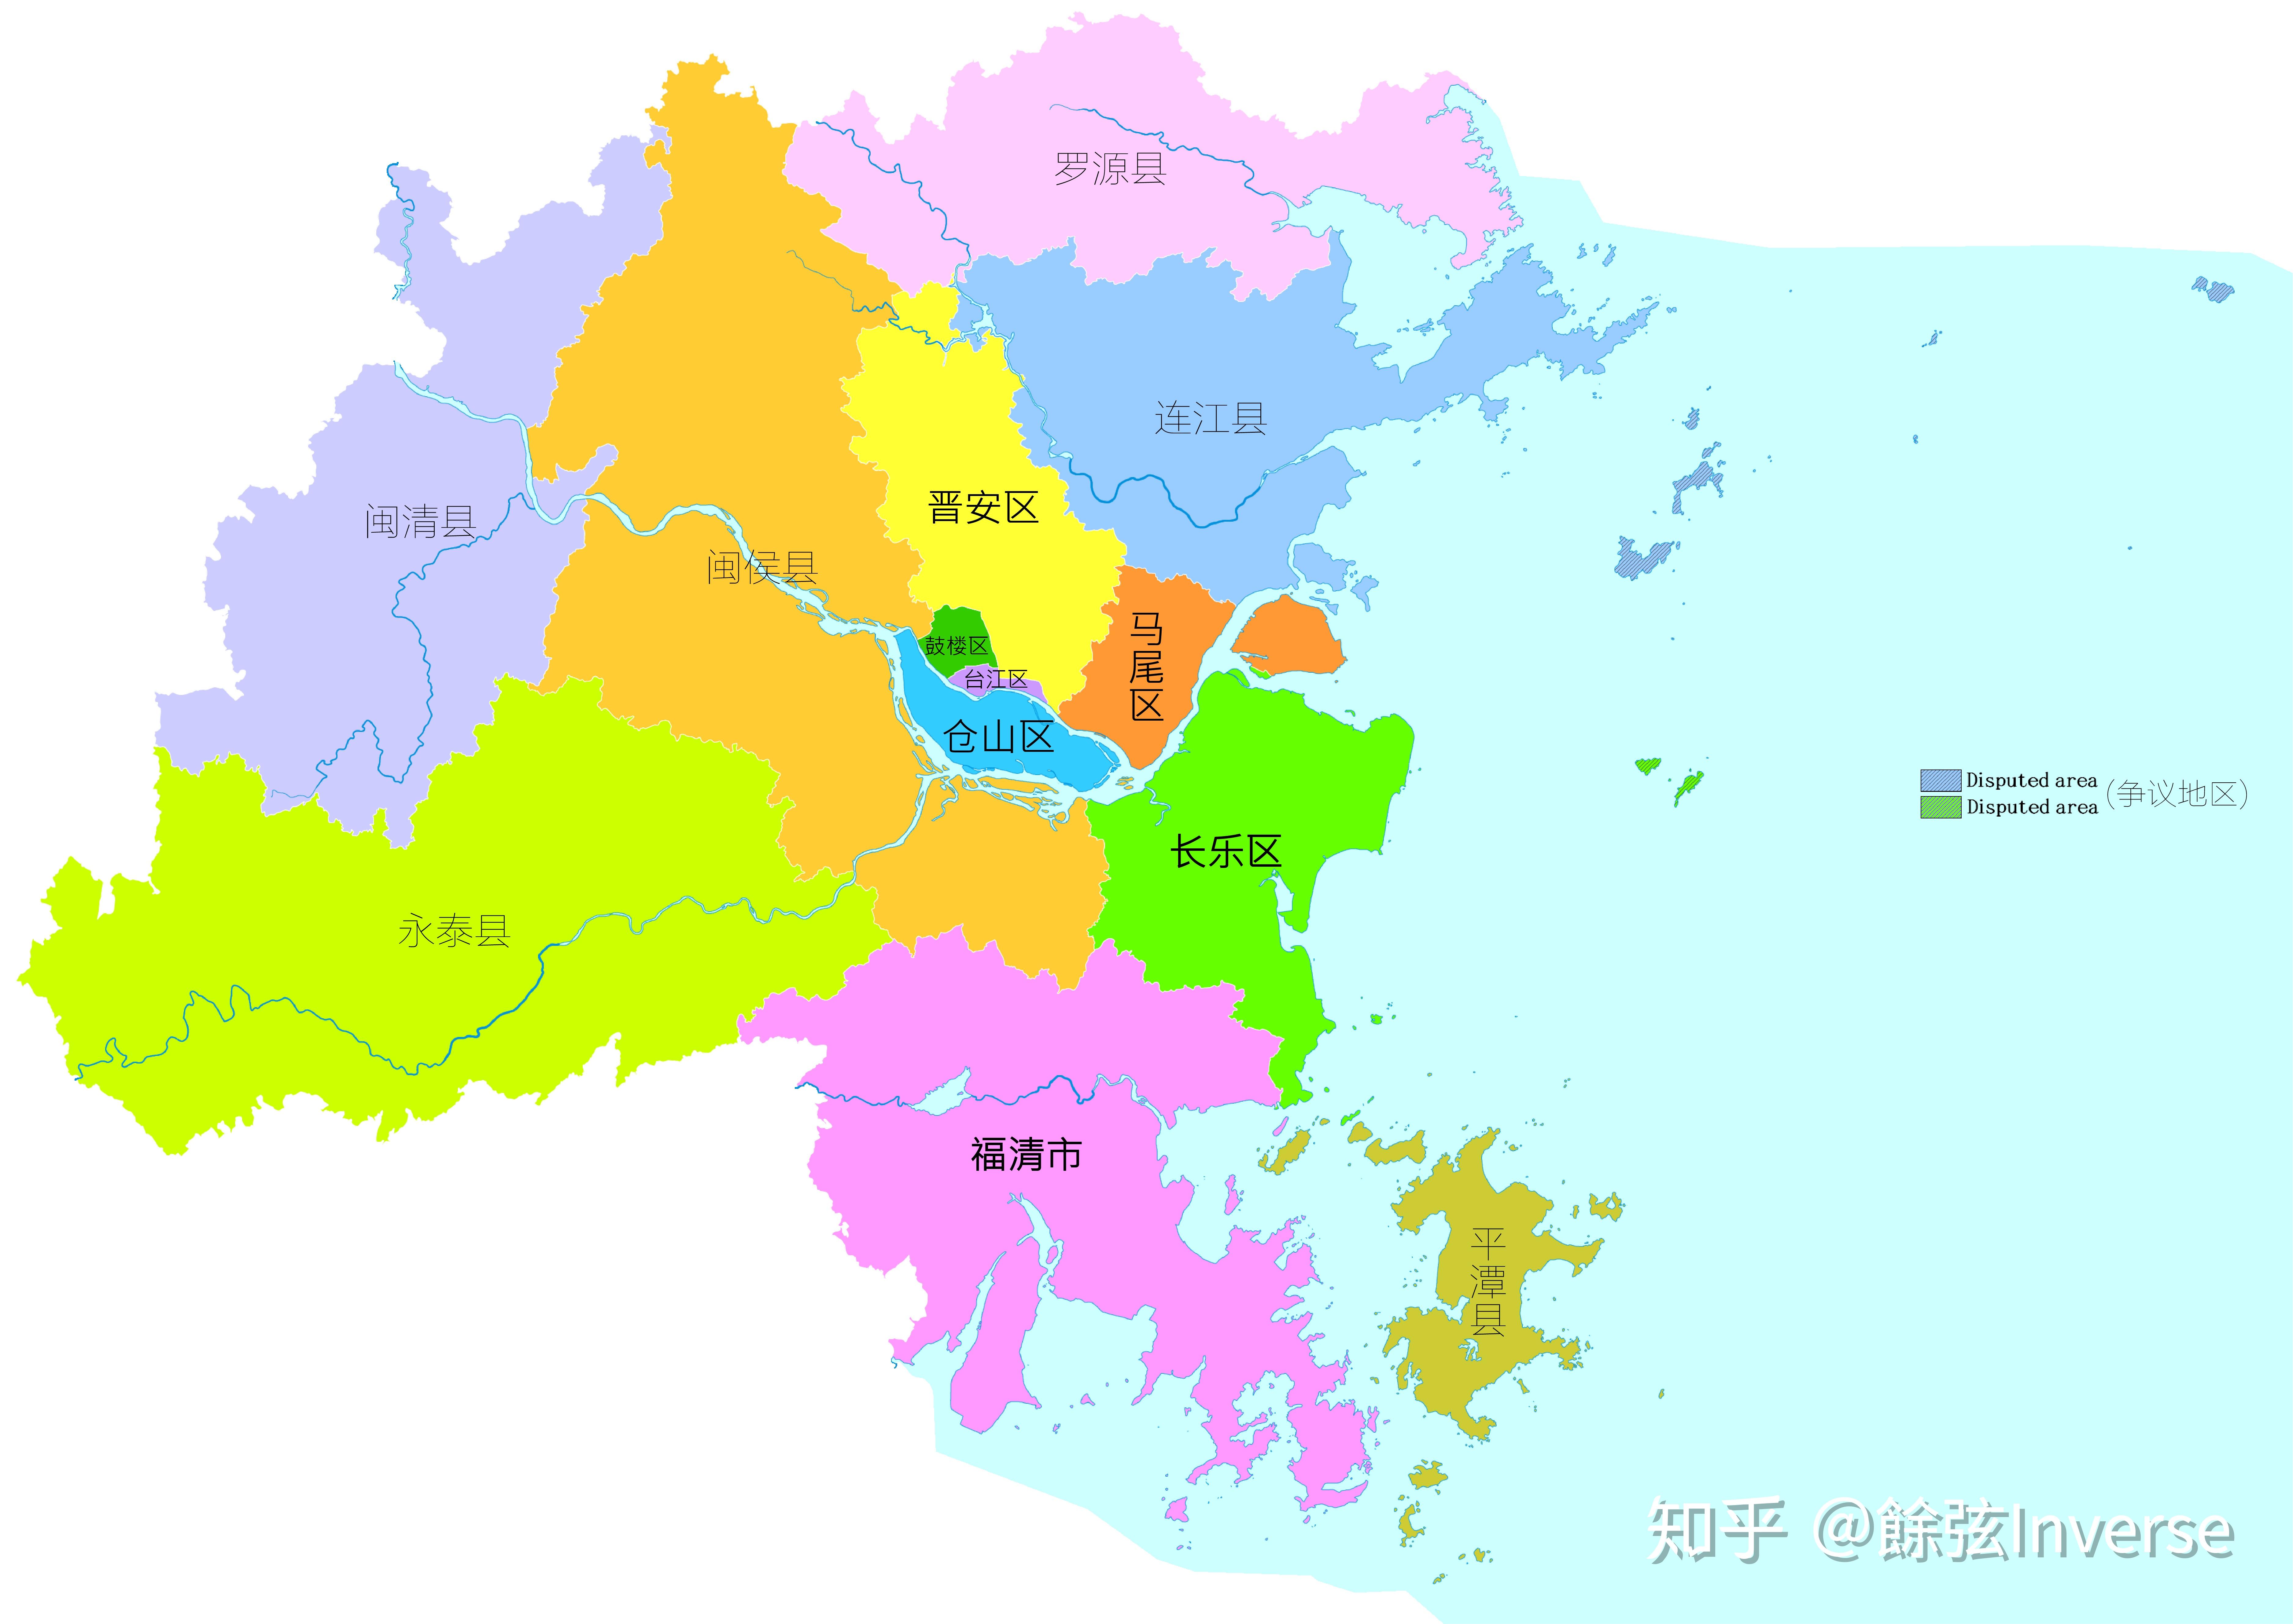 福建省位于我国东南沿海,同台湾省隔海相望,境内山地丘陵面积占总土地